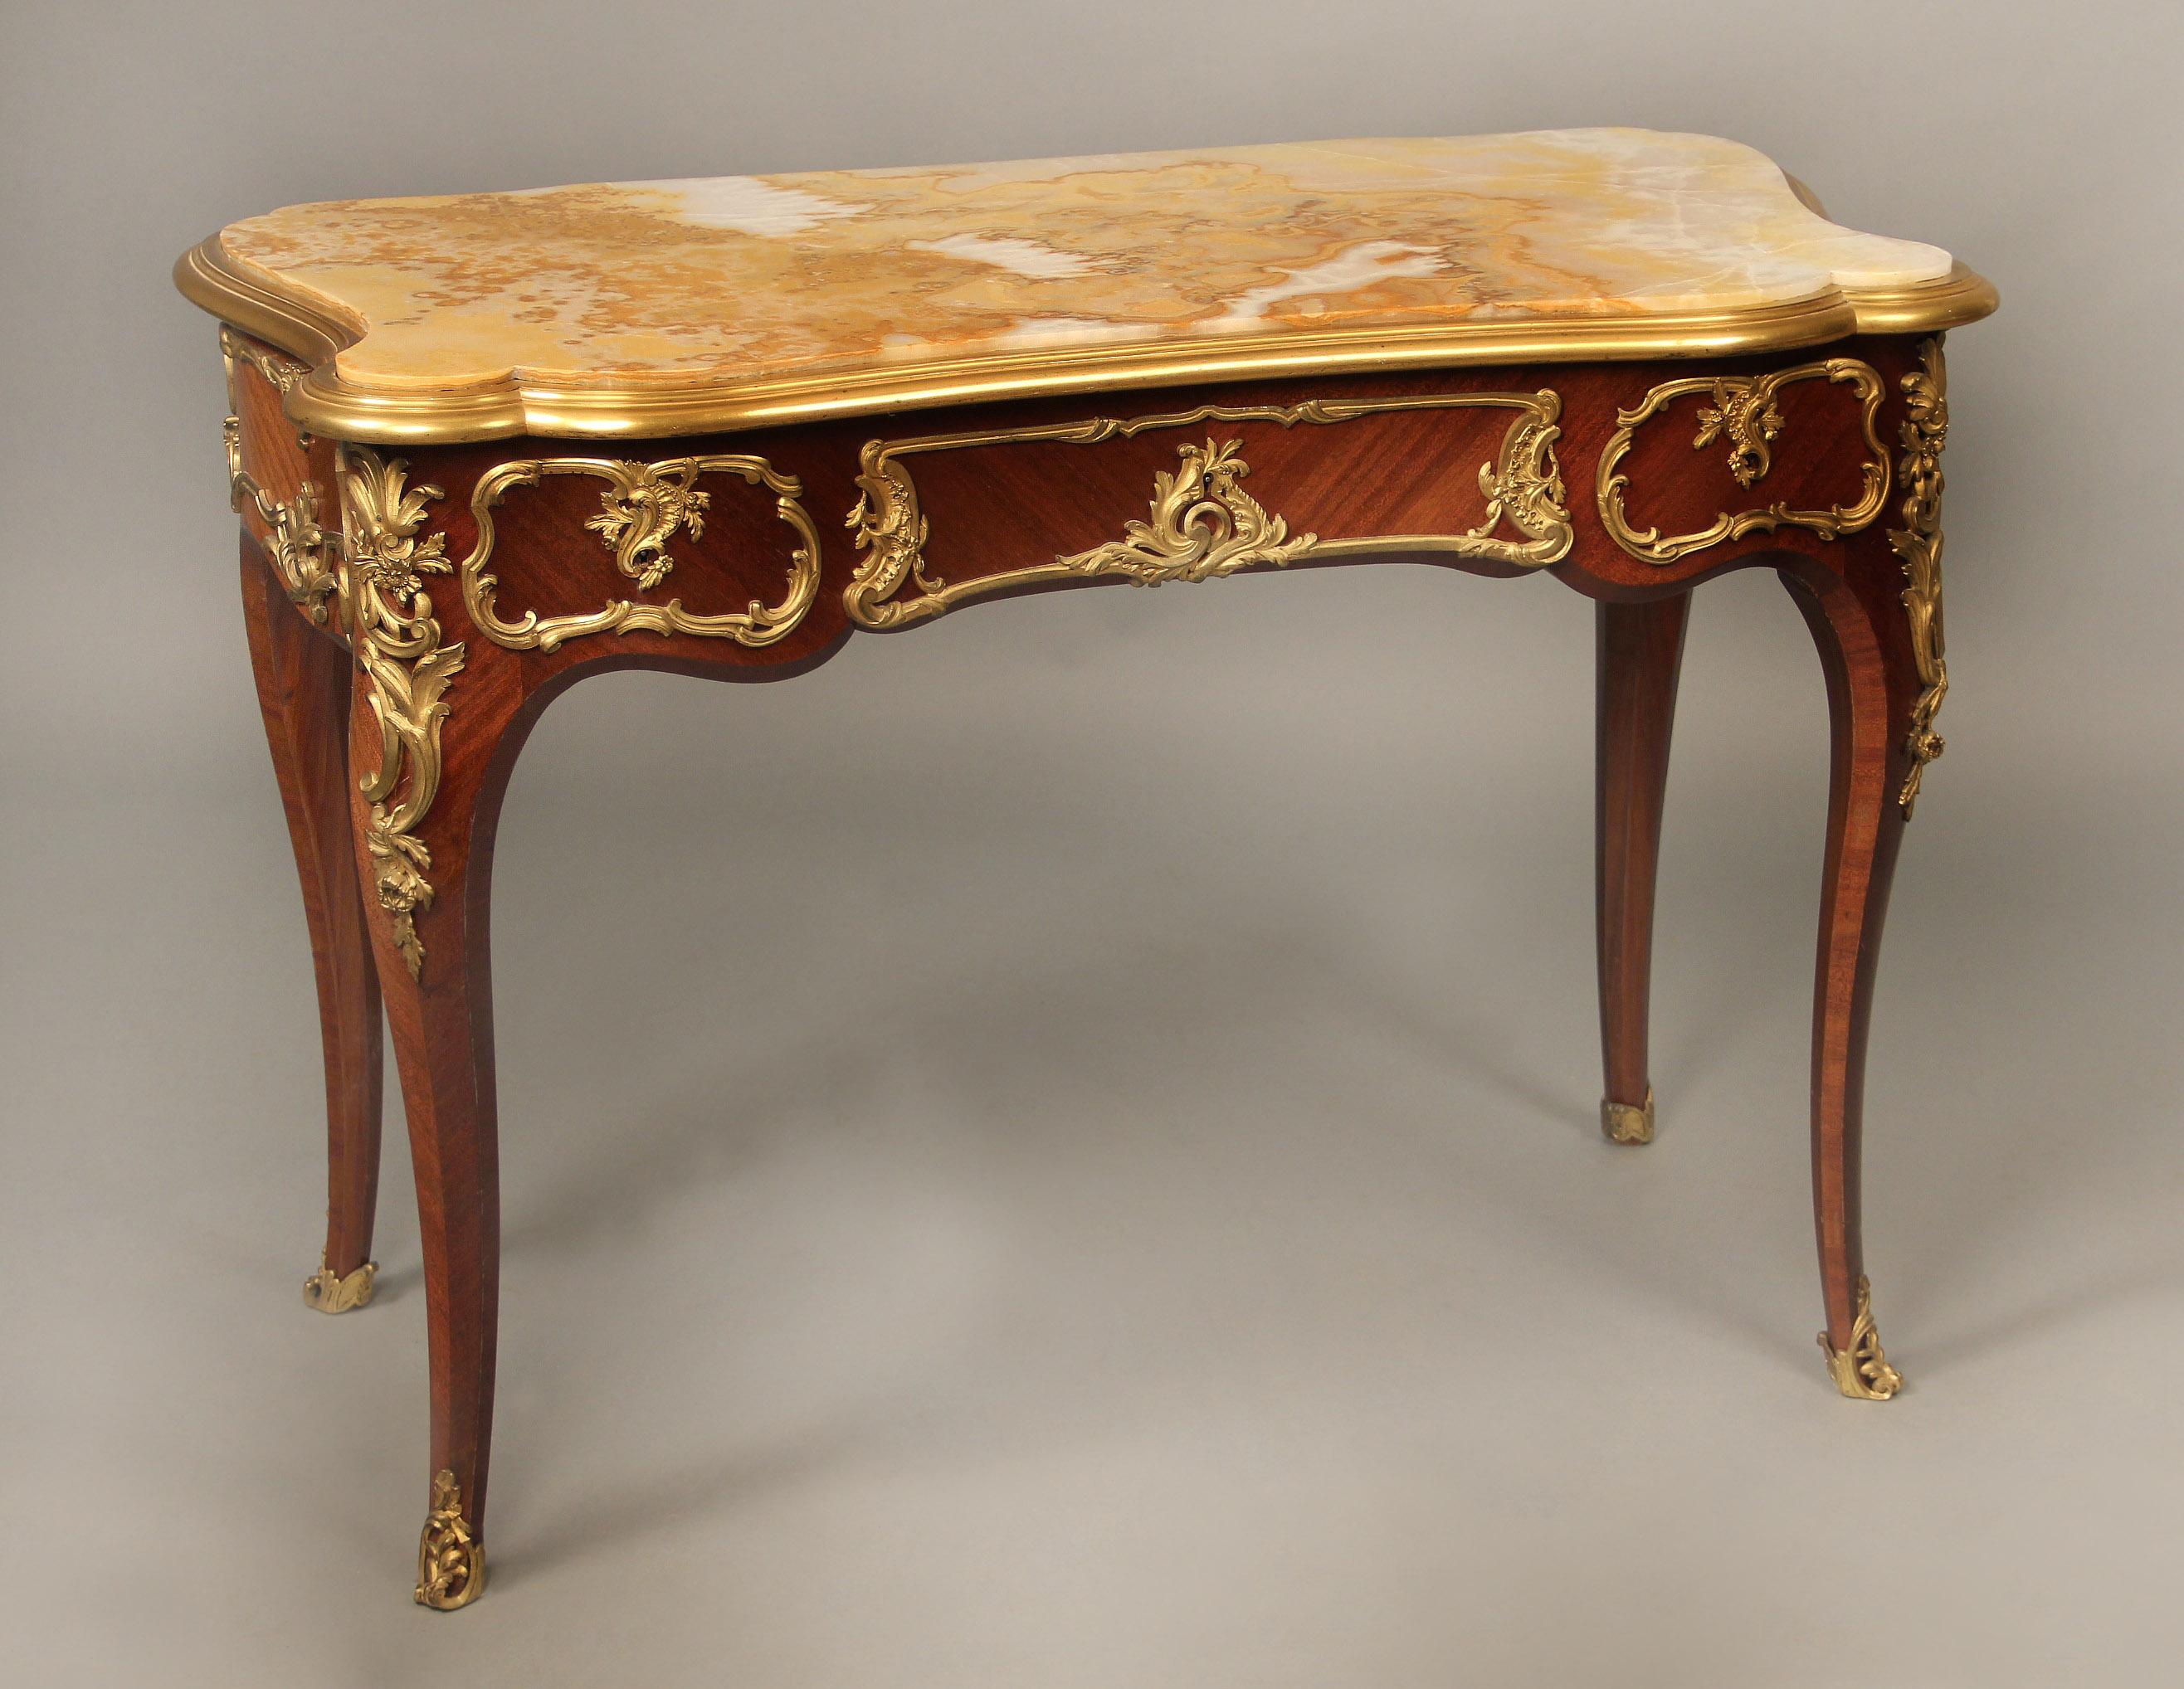 Intéressante table d'appoint de style Louis XV en onyx, fin du 19ème siècle, montée en bronze doré, par Henry Dasson

Henry Dasson

Le beau plateau d'onyx façonné dans une bordure de bronze, au-dessus d'un long tiroir central et de deux petits